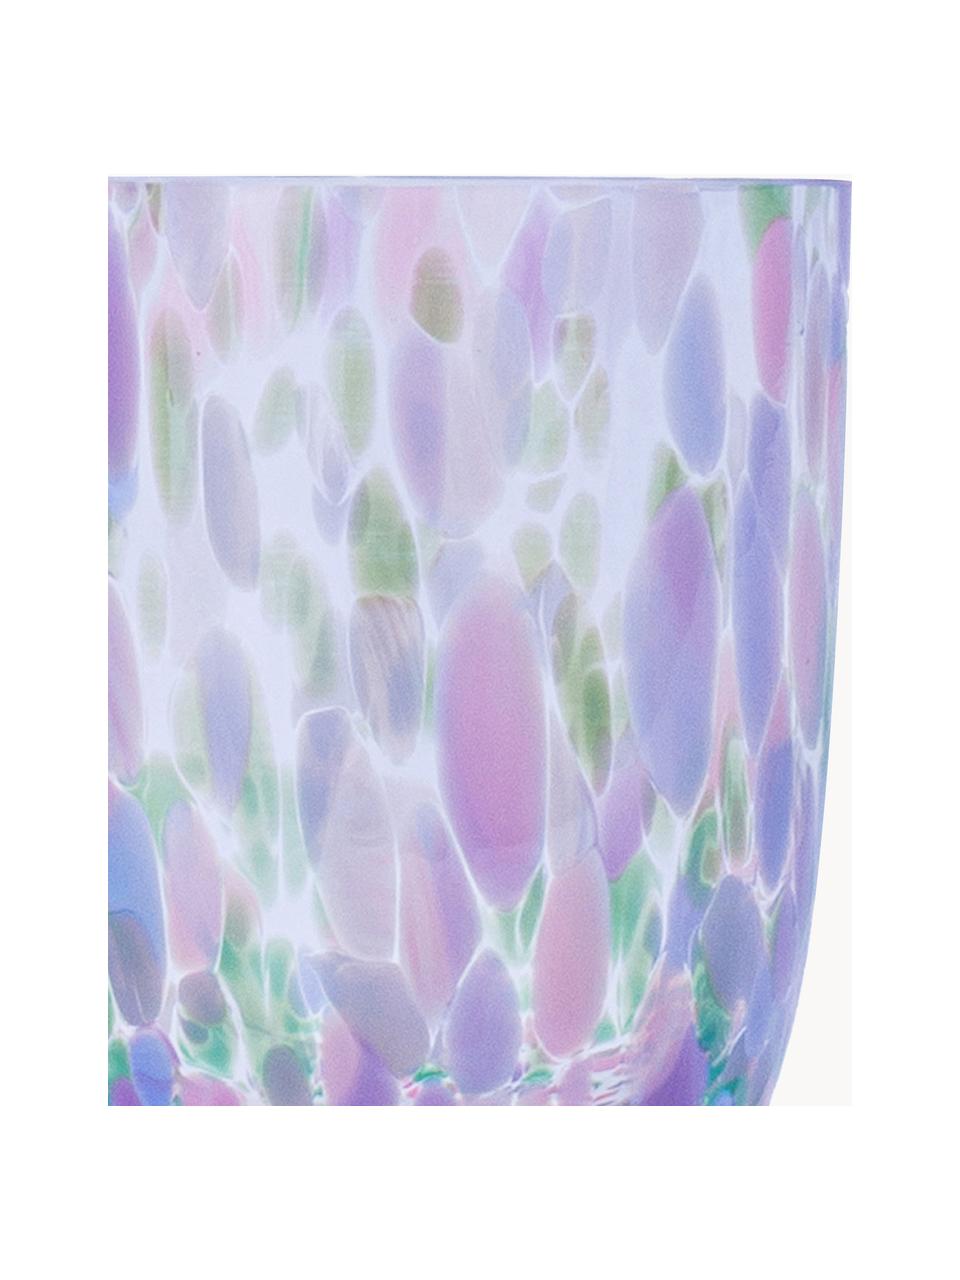 Sada ručně vyrobených sklenic Big Confetti, 6 dílů, Sklo, Transparentní, odstíny růžové, modré a zelené, Ø 7 cm, V 10 cm, 250 ml